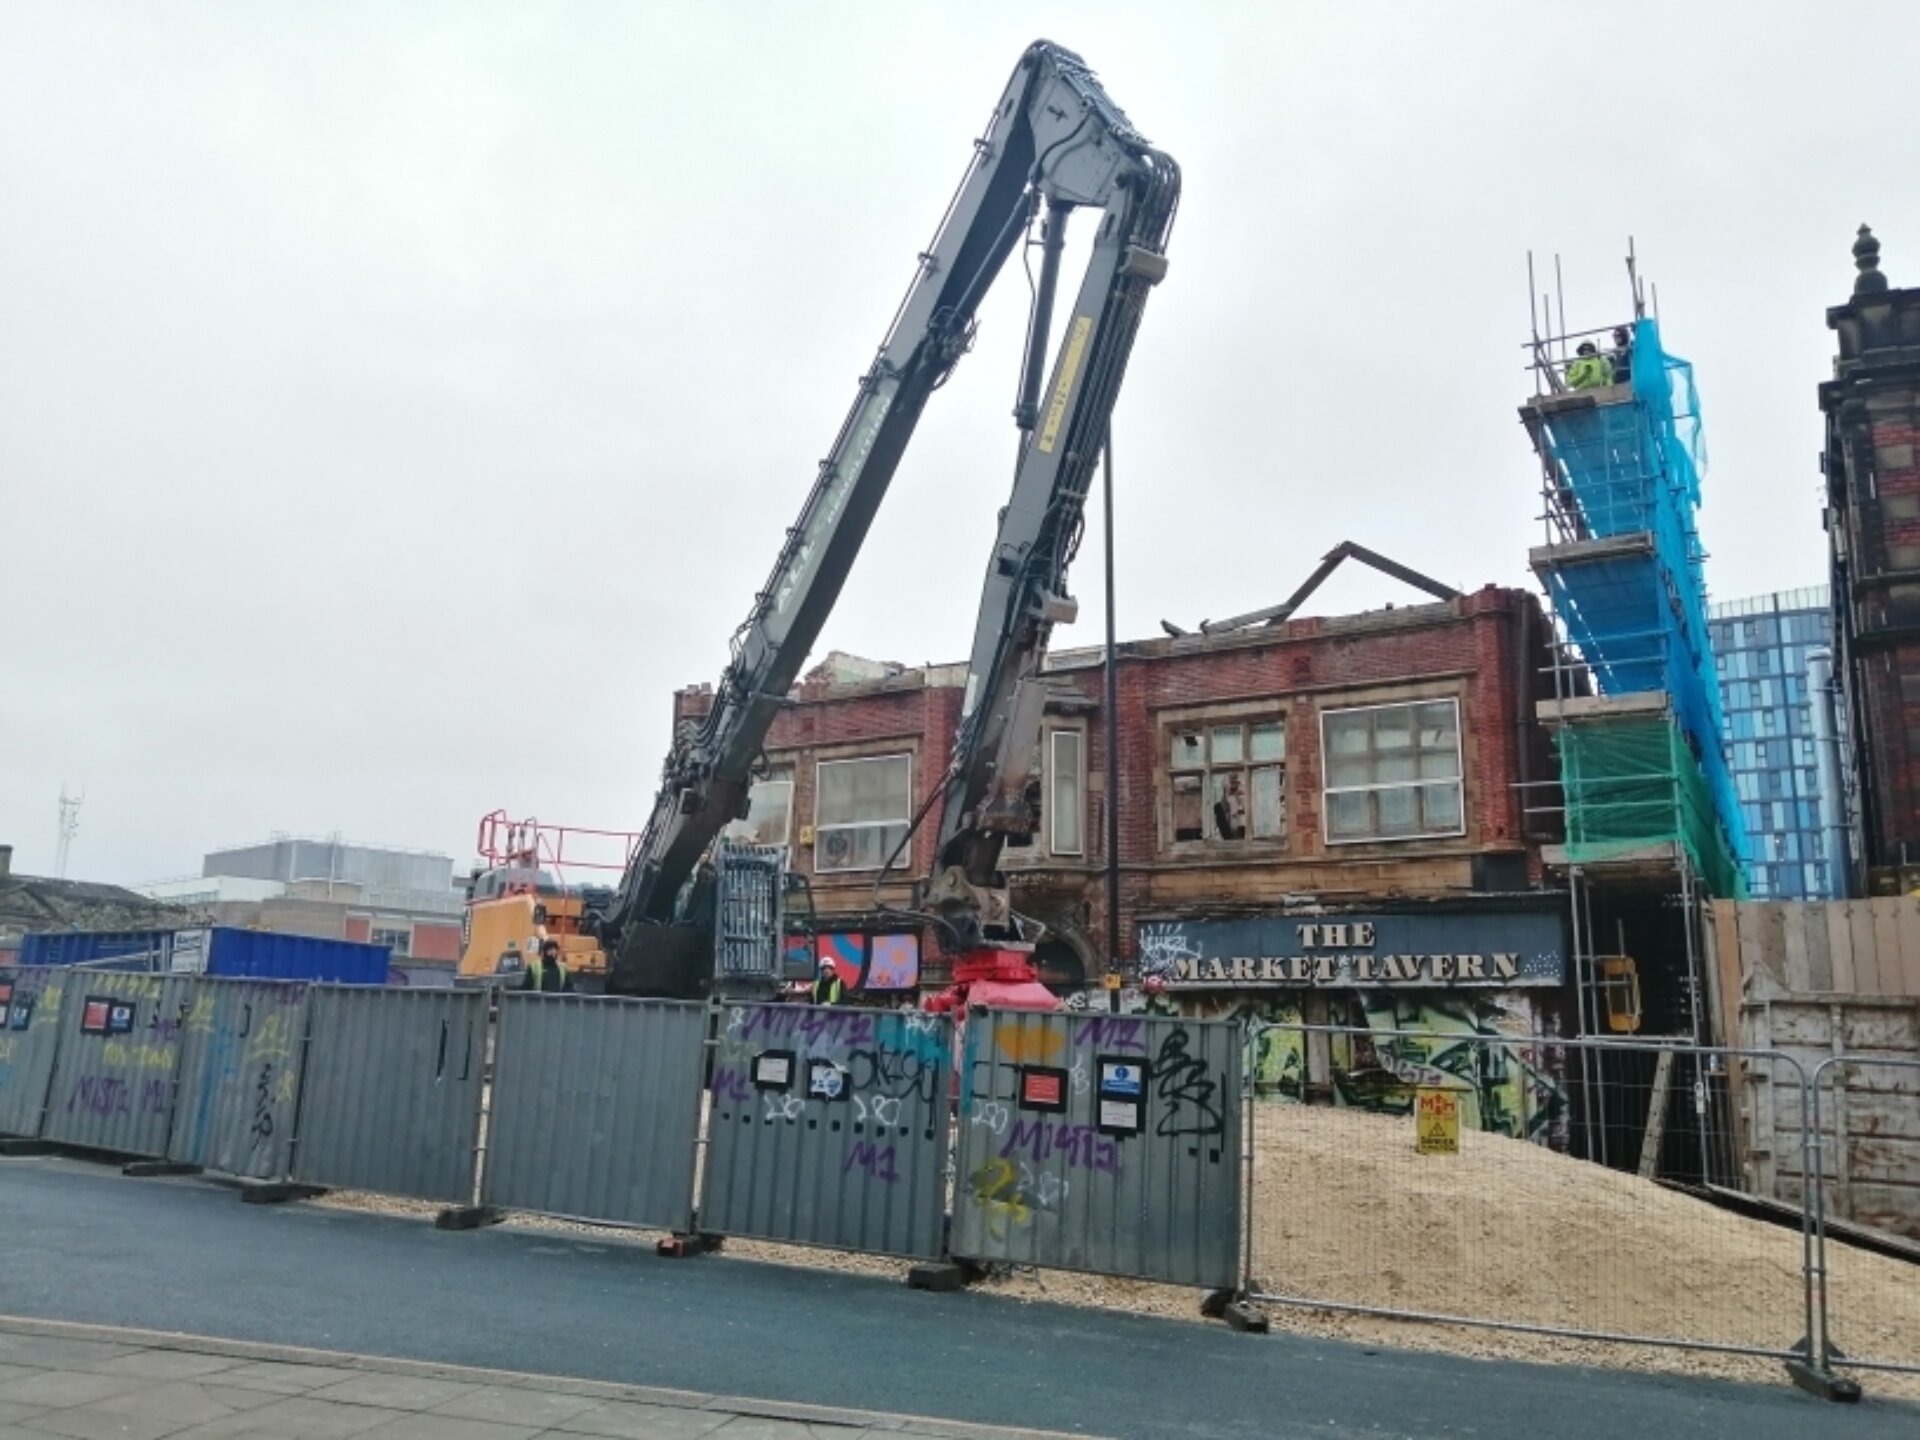 Market tavern demolition